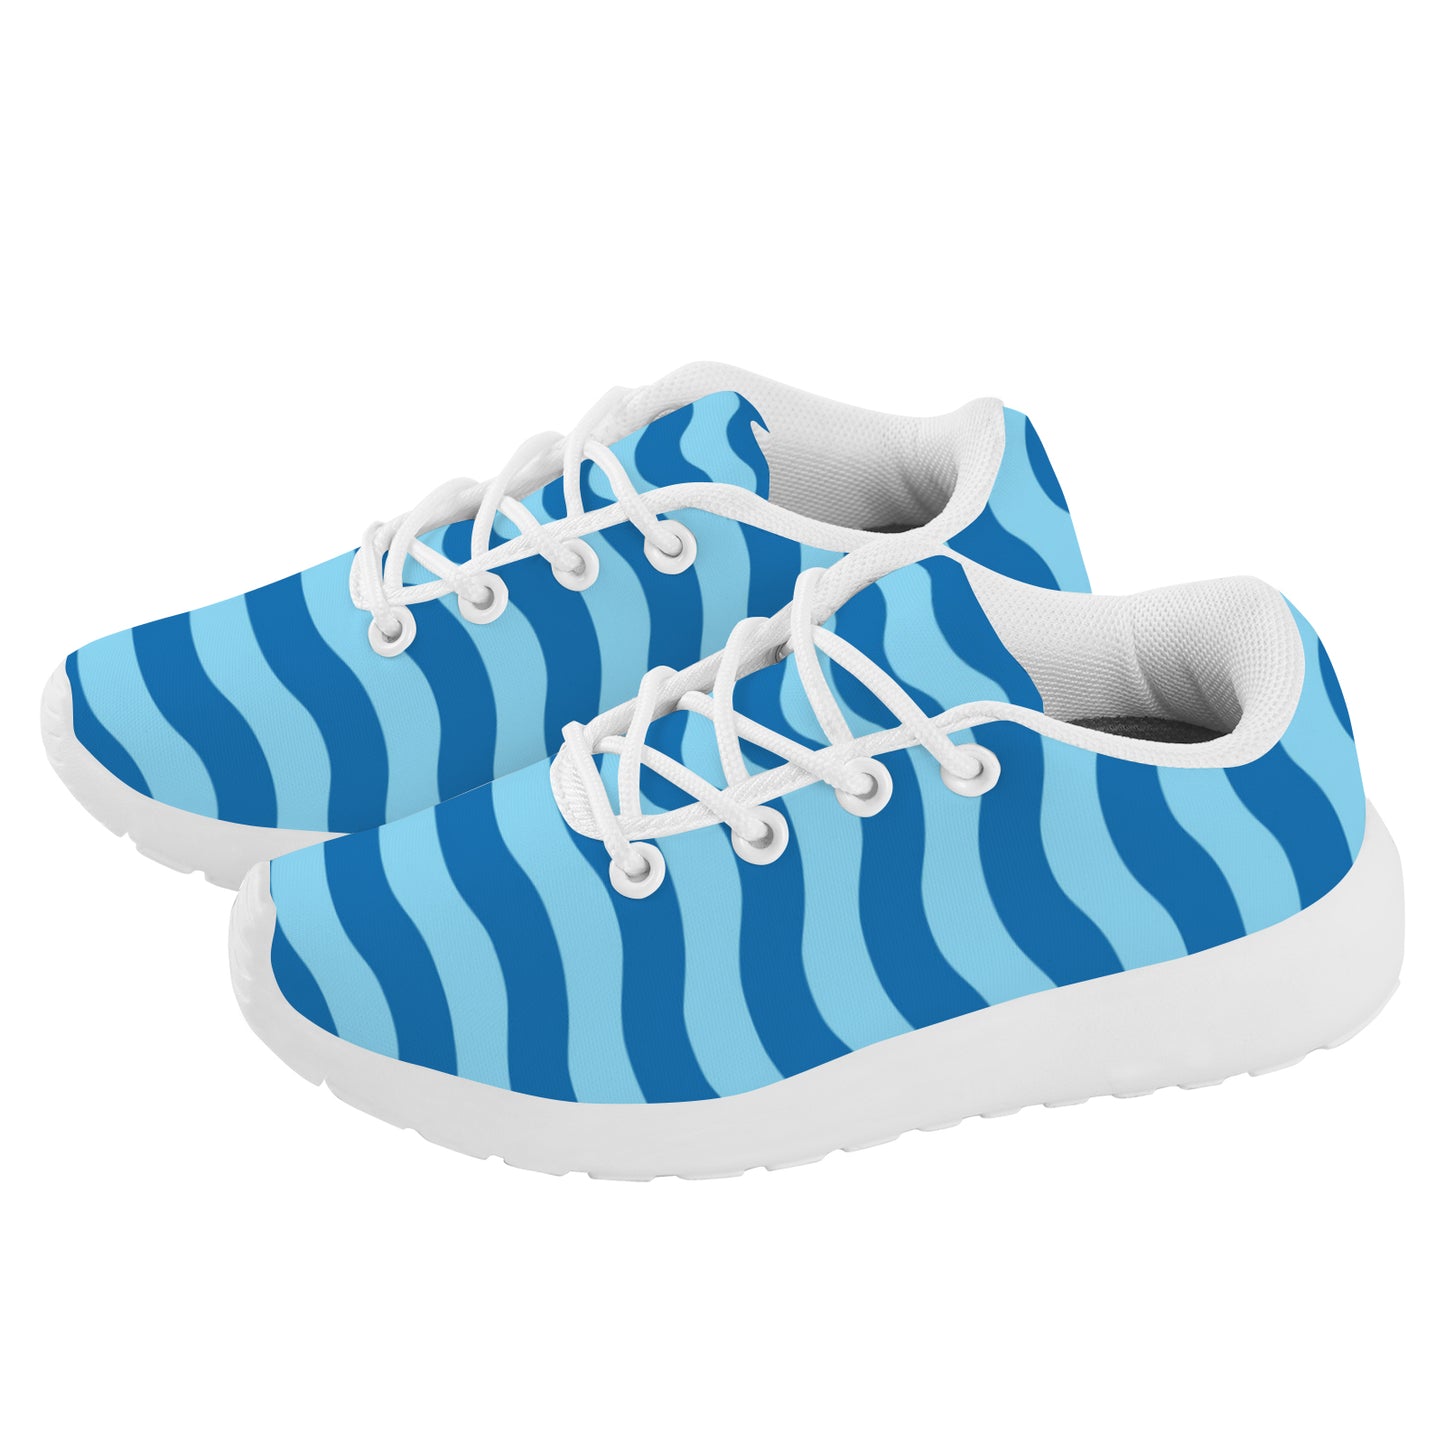 Kid's Sneakers - Blue Waves